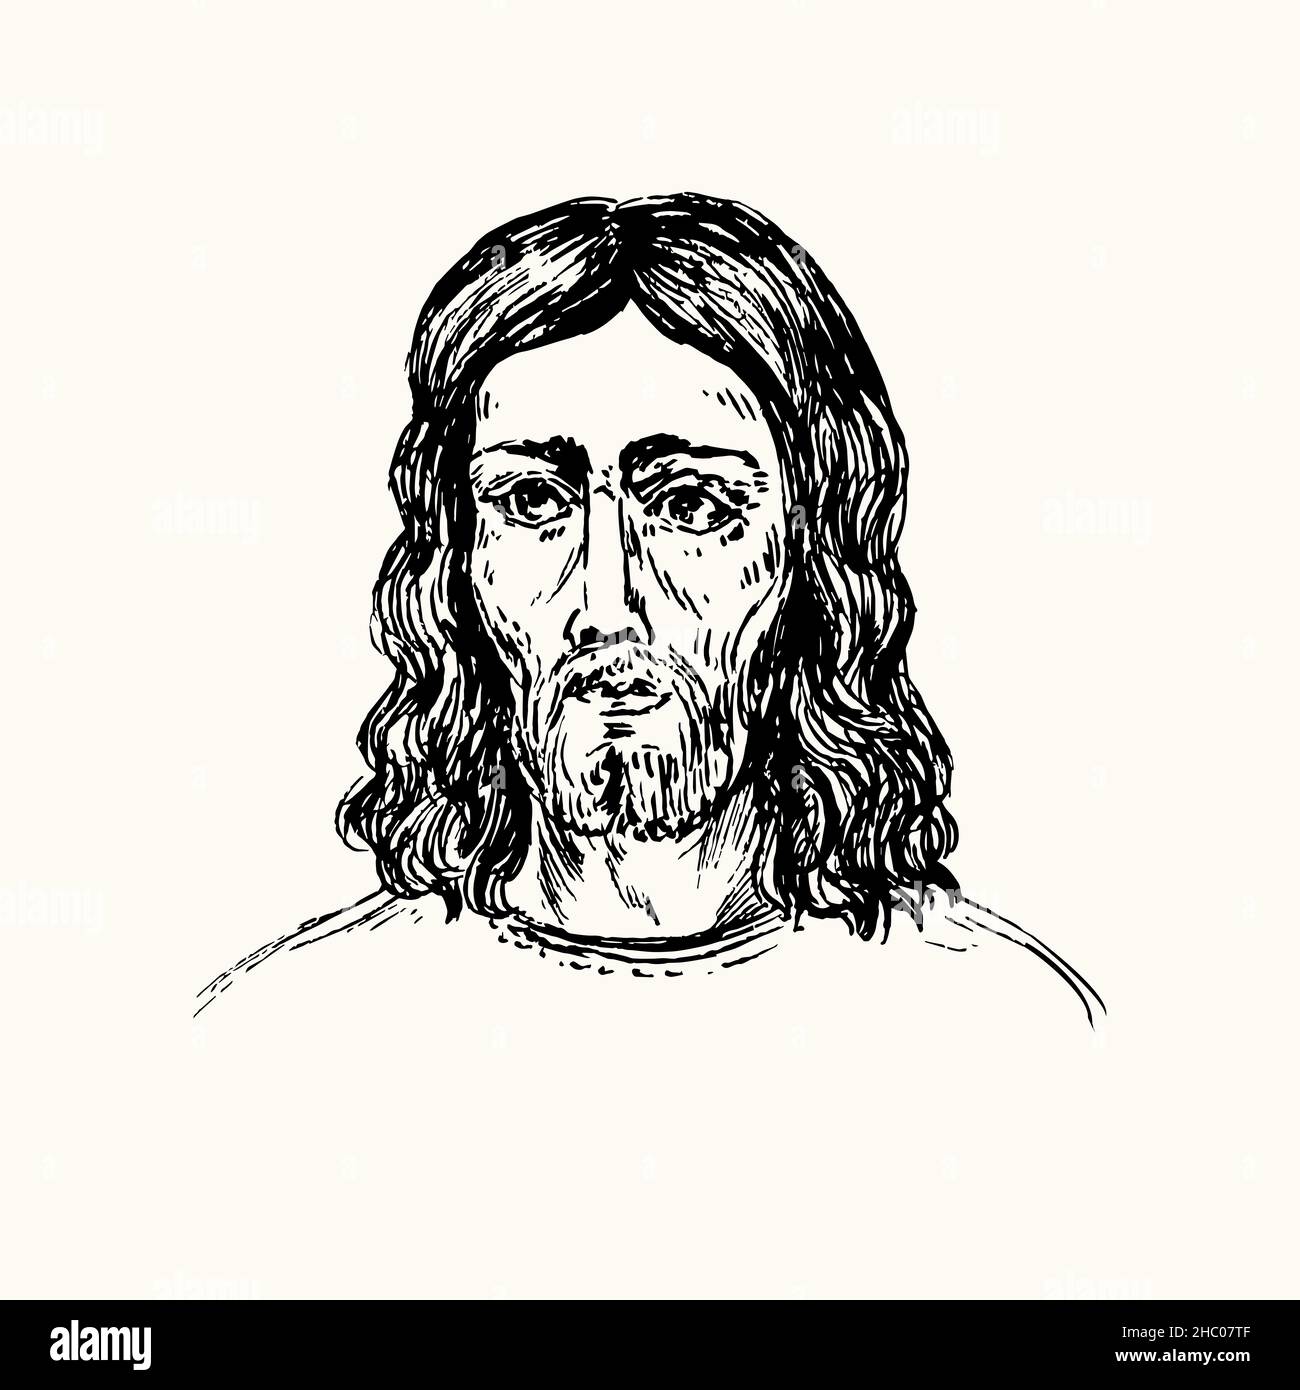 Icono De Jesucristo Dibujo De Fideos En Blanco Y Negro Con Tinta En